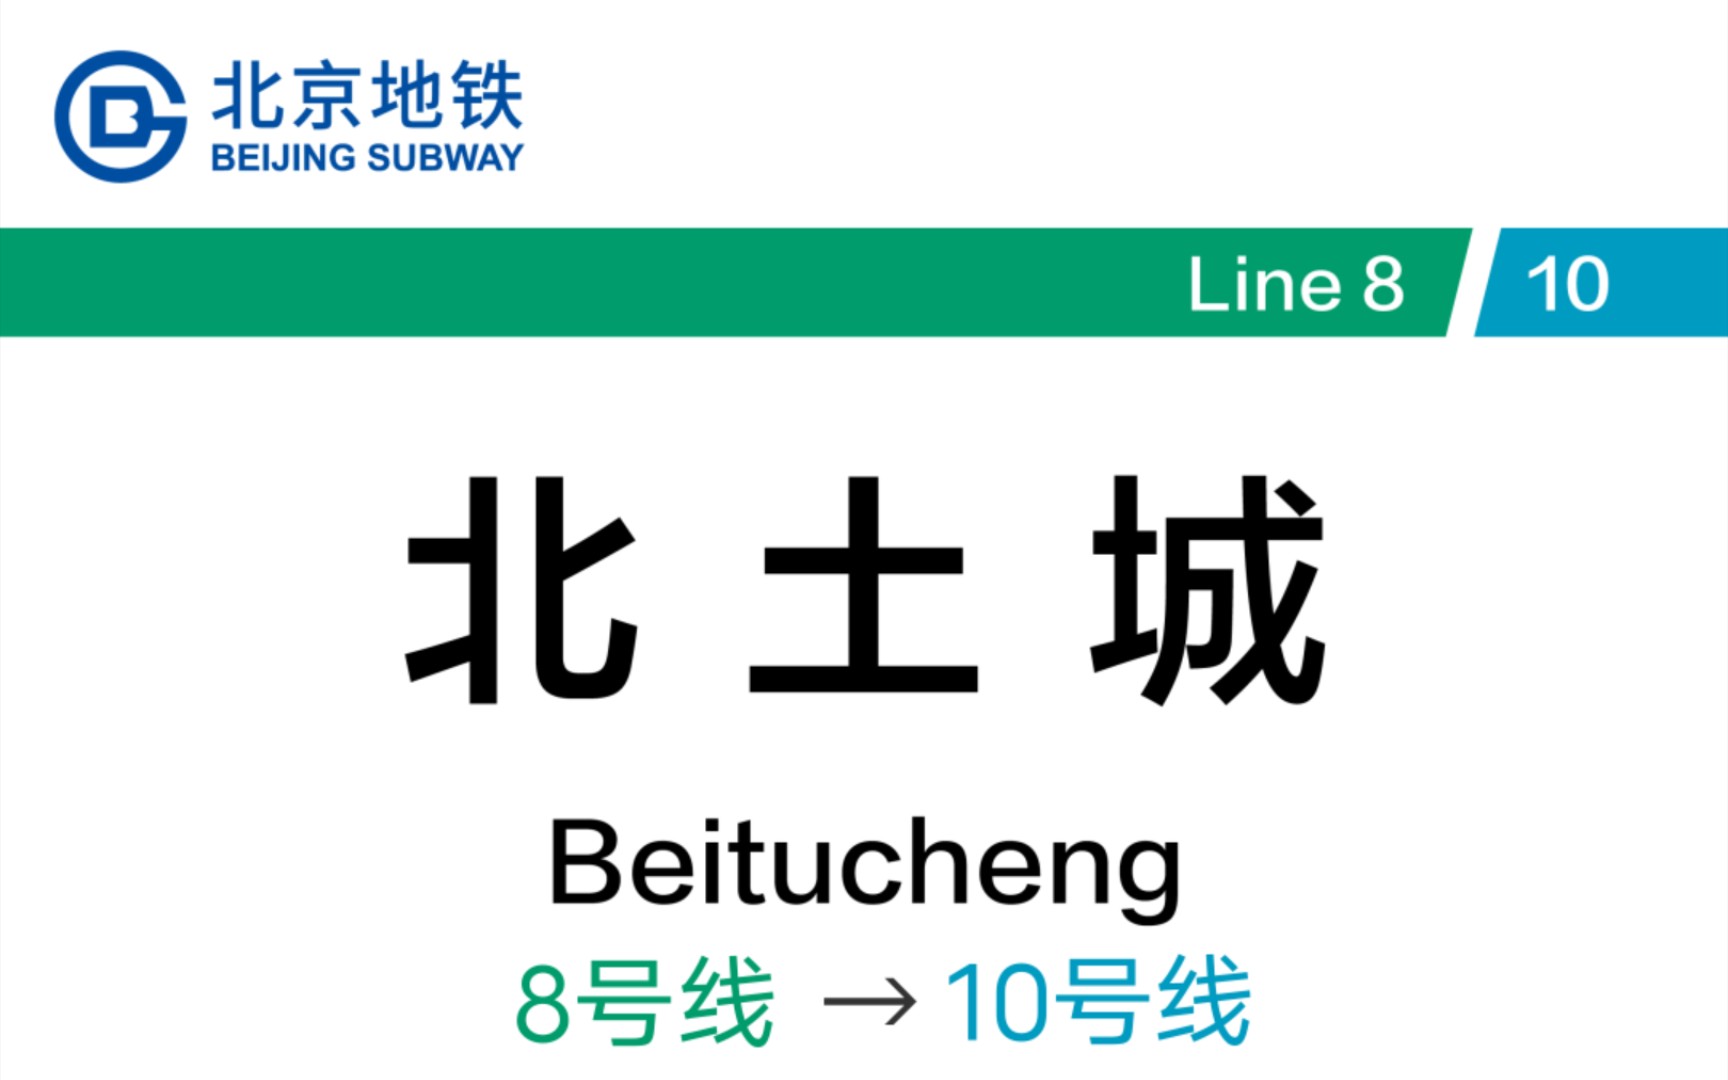 (原声大碟)北京地铁北土城站 8号线→10号线 换乘记录